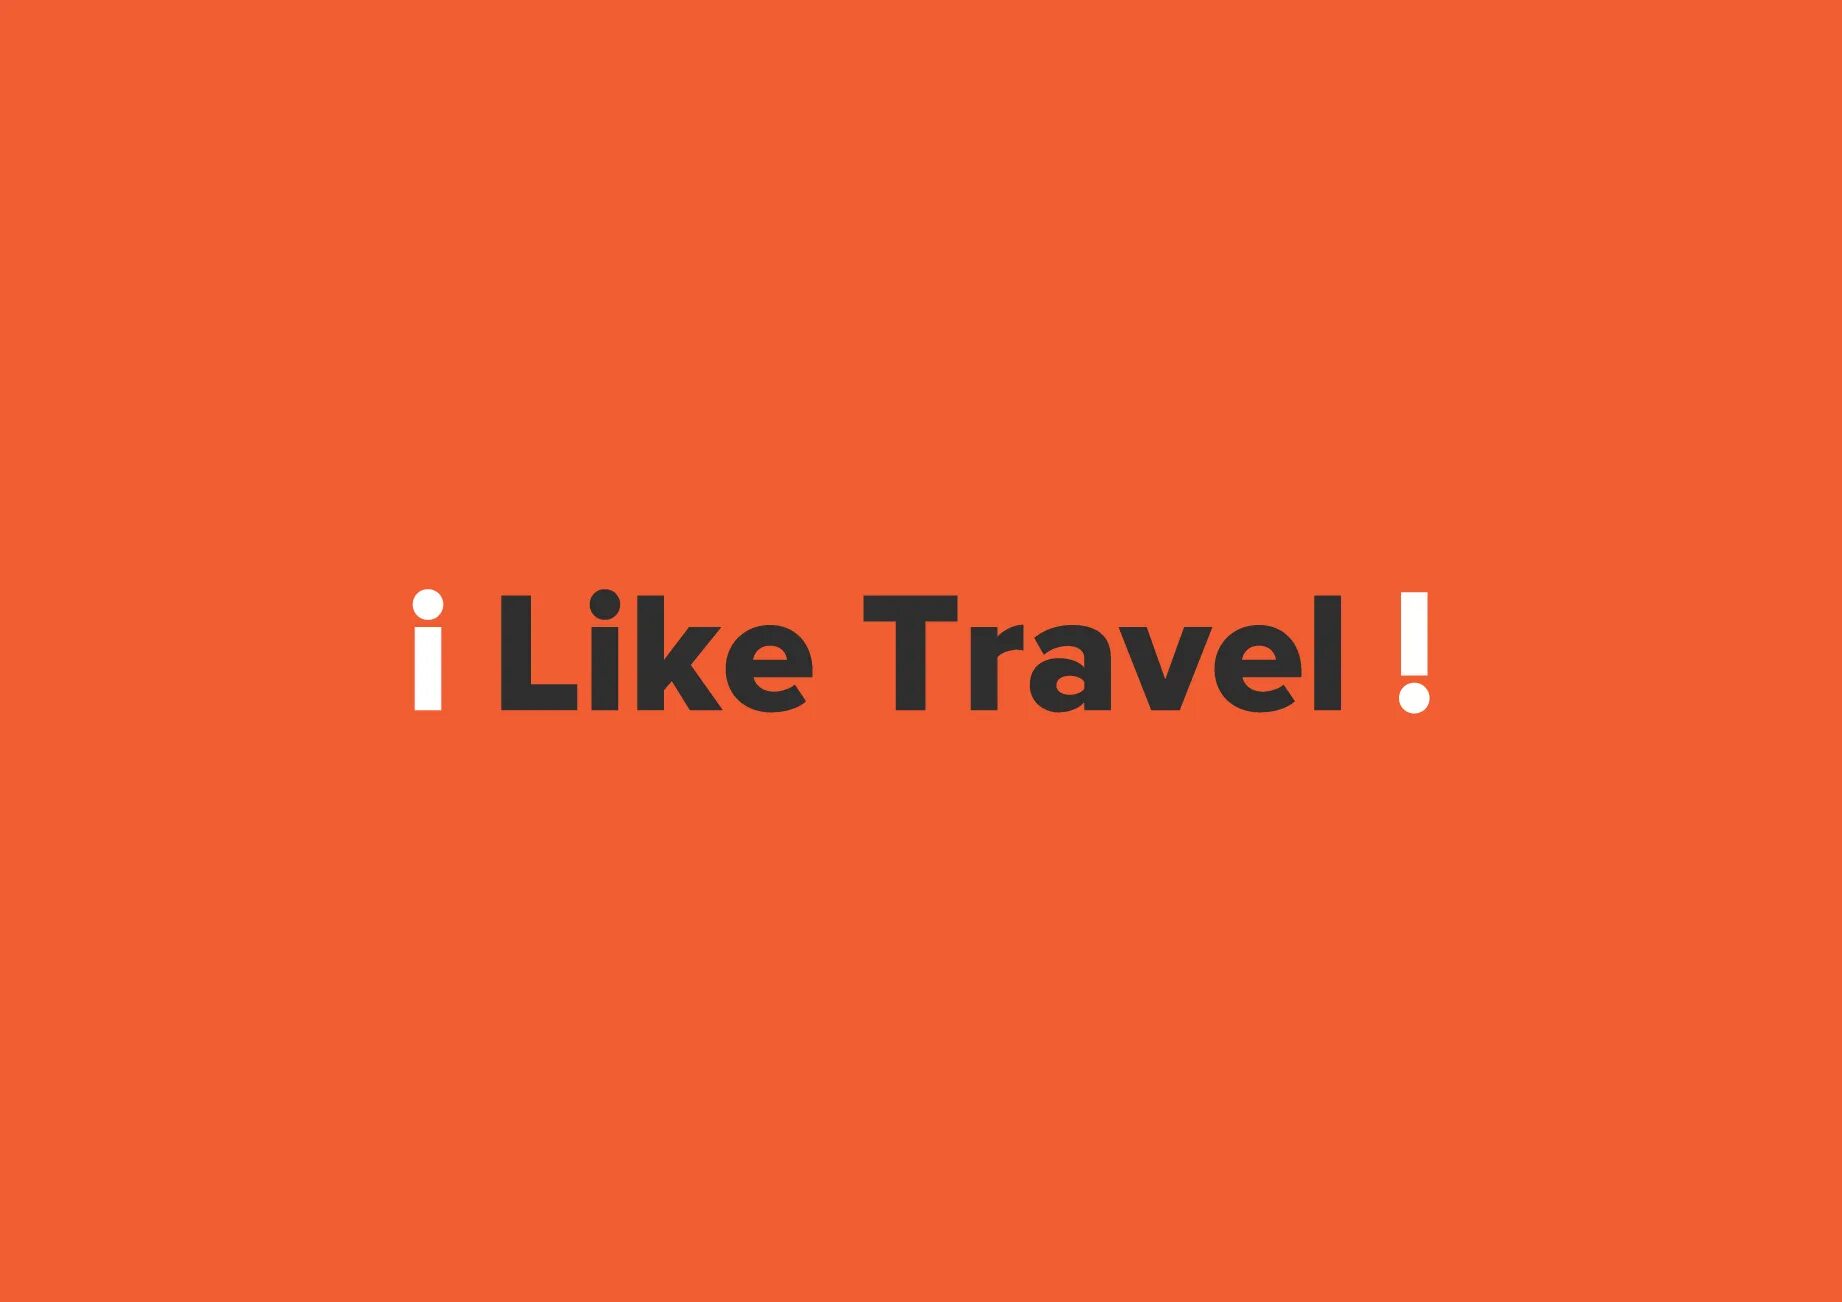 Лайк Тревел. Like&Travel. I like to Travel. Travel like 12